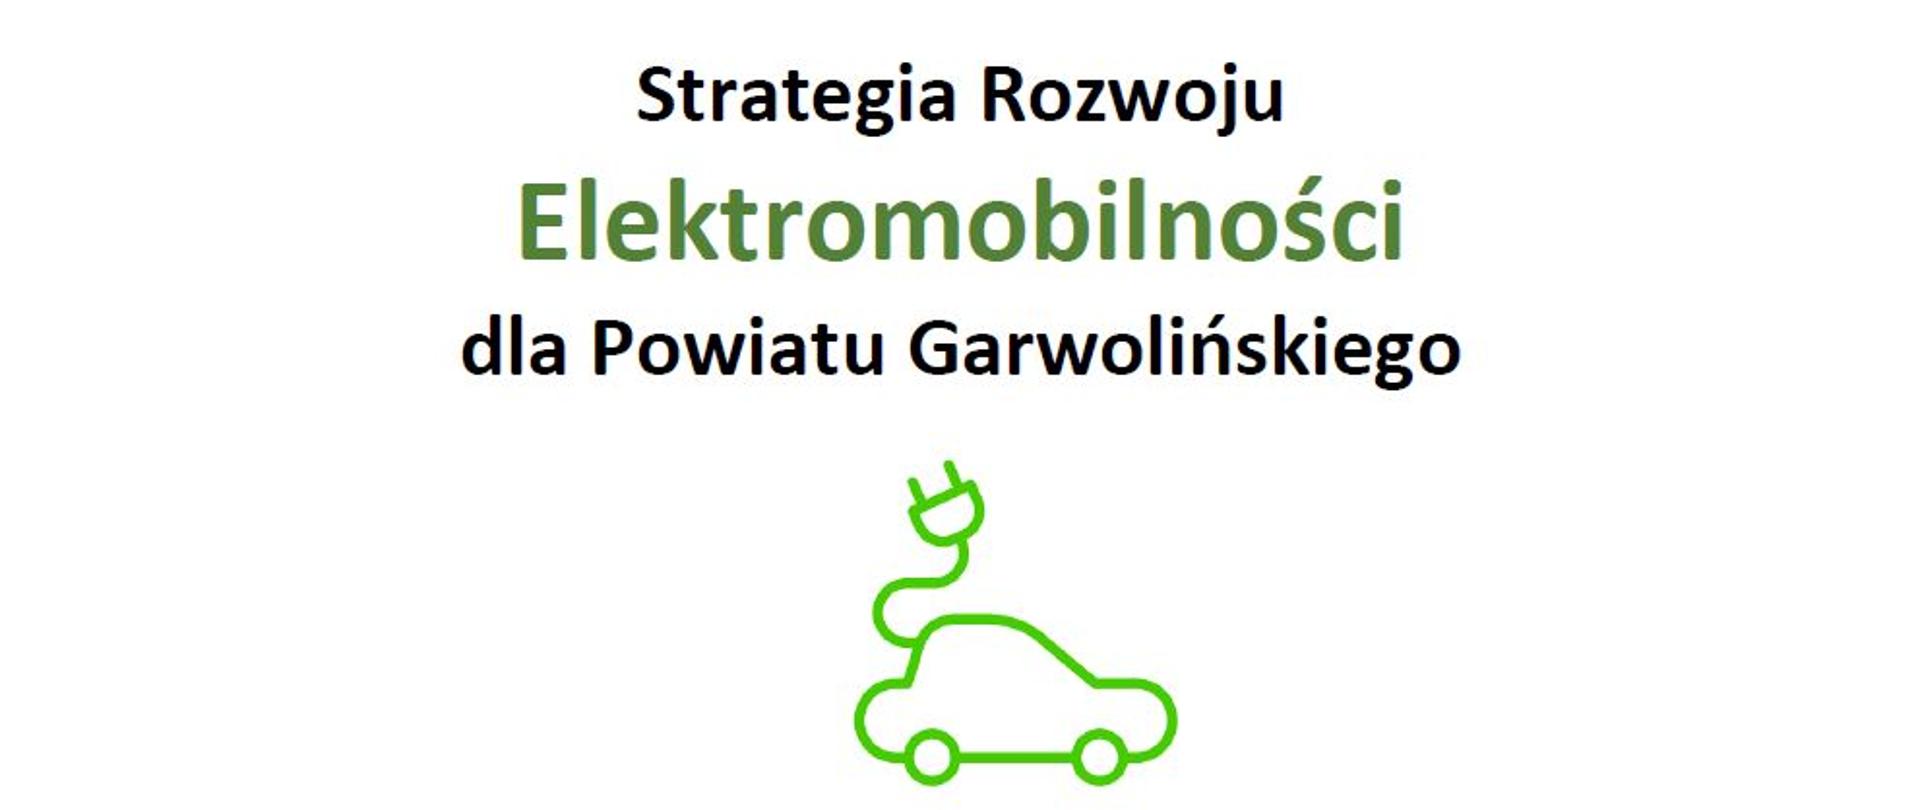 Strategia elektromobilności